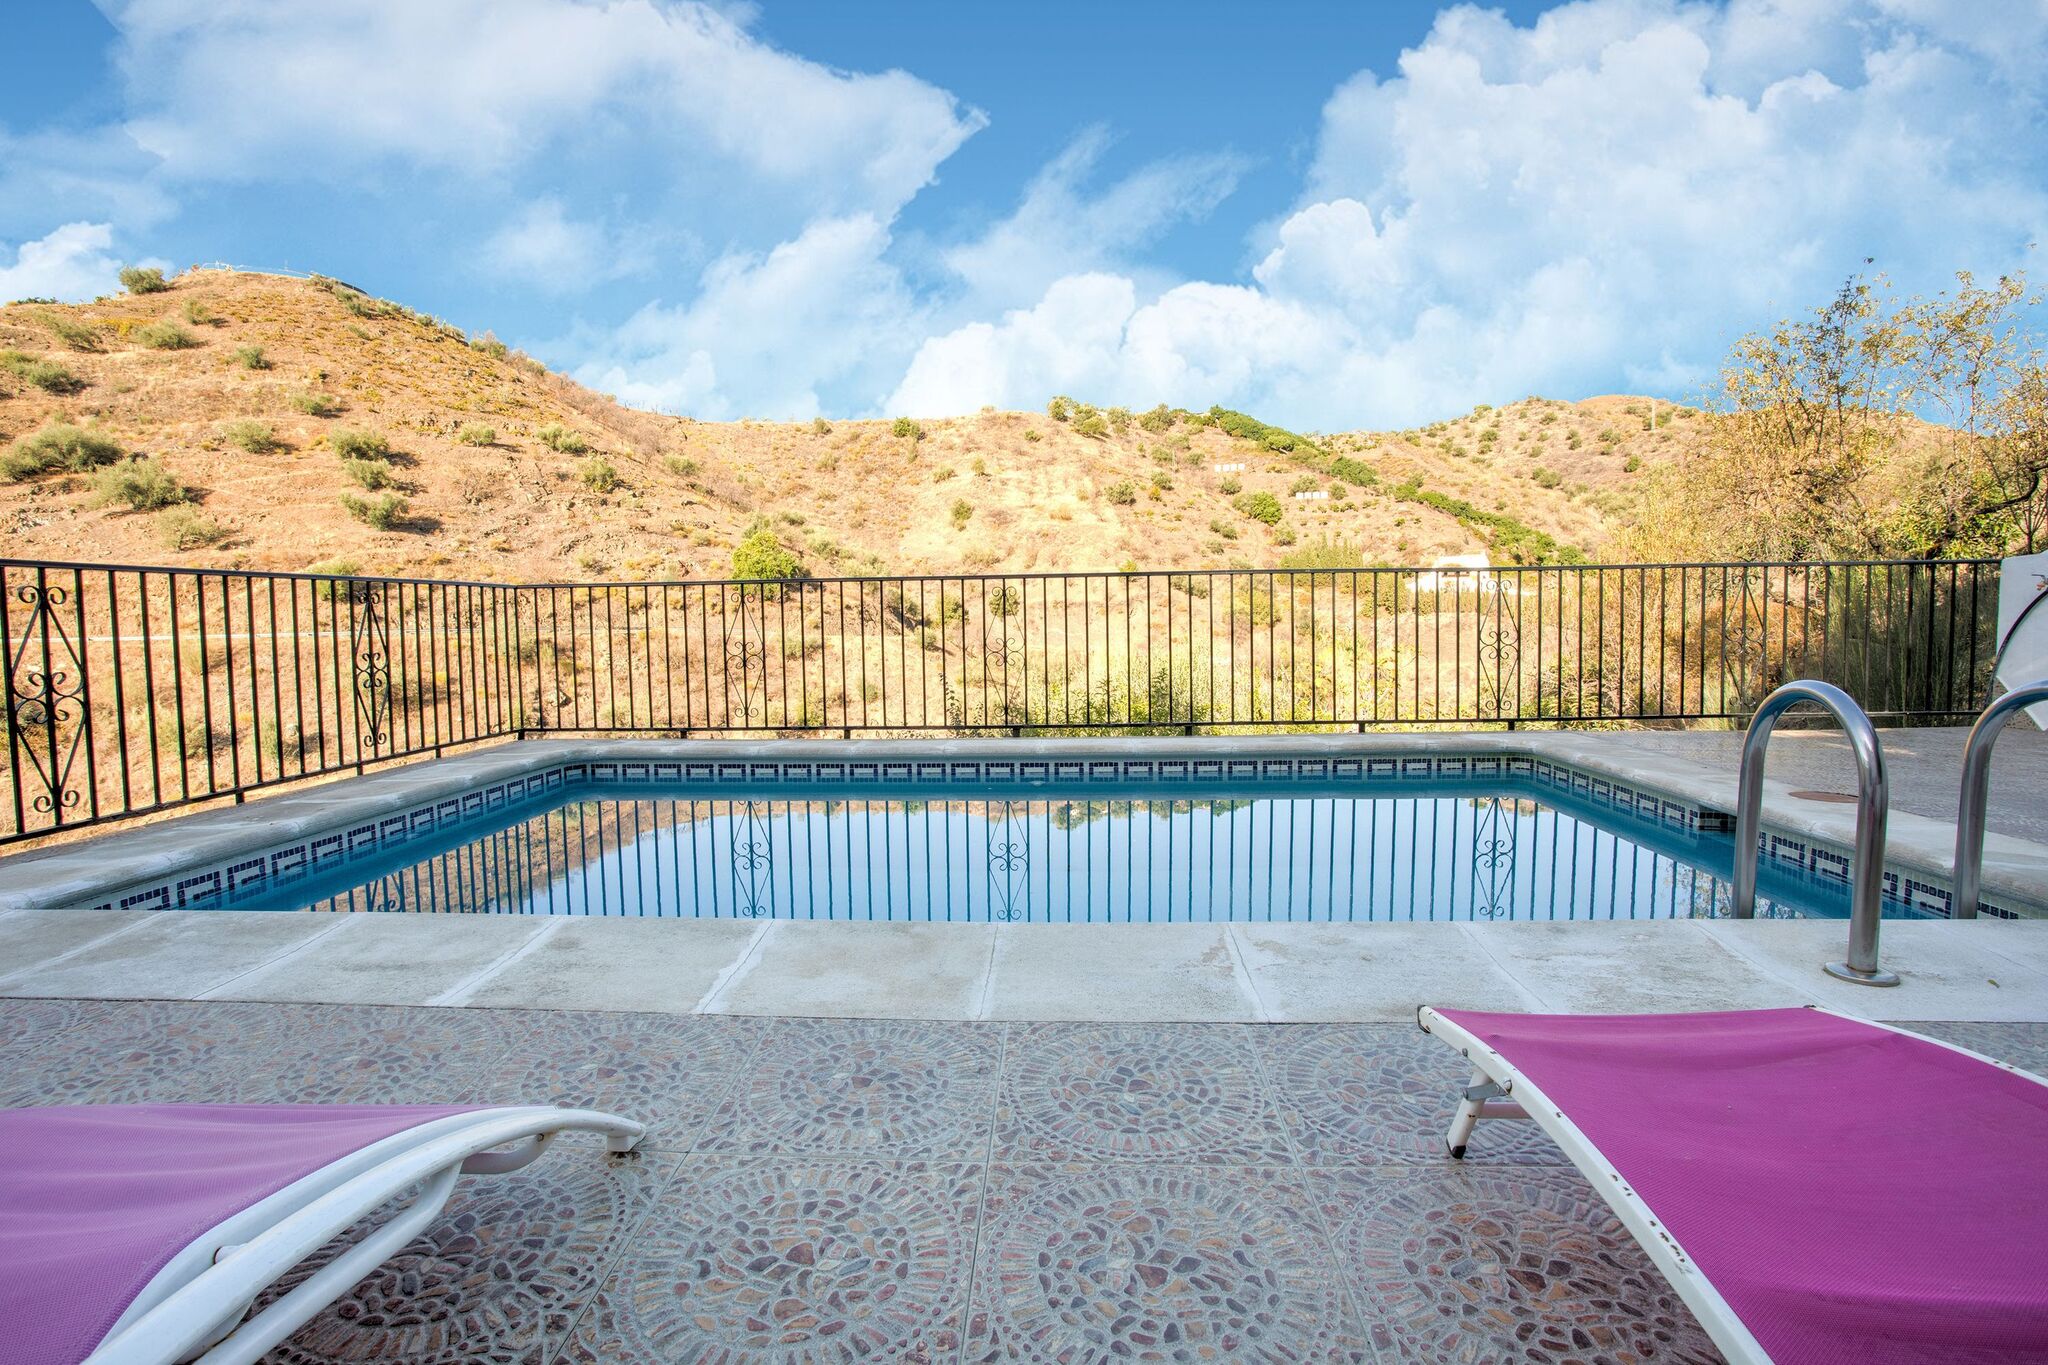 Maison de vacances isolée à Malaga avec piscine privée